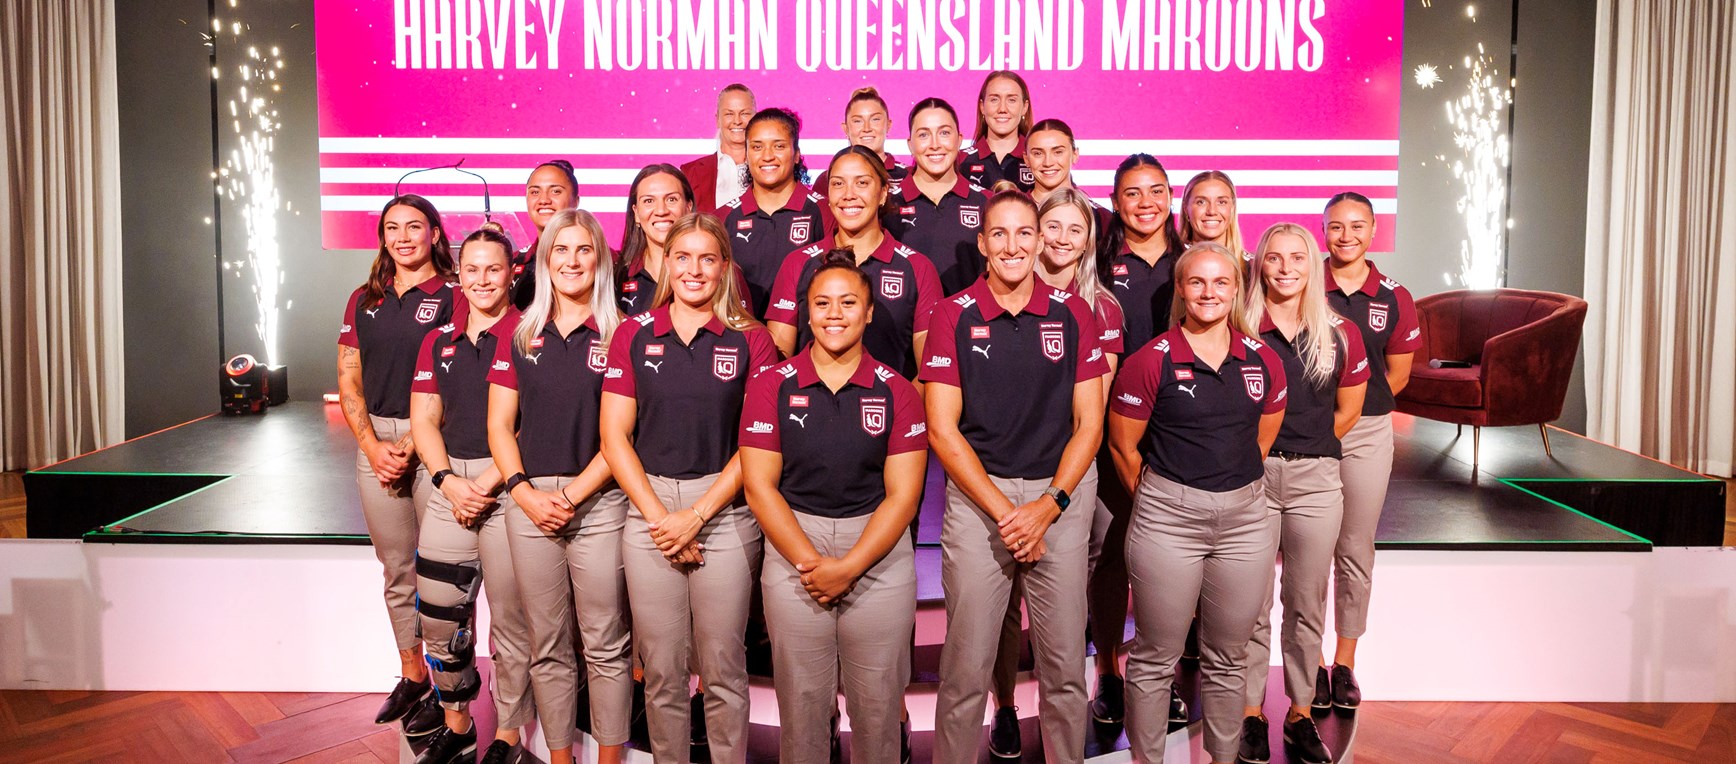 In pictures: Harvey Norman Queensland Maroons series launch